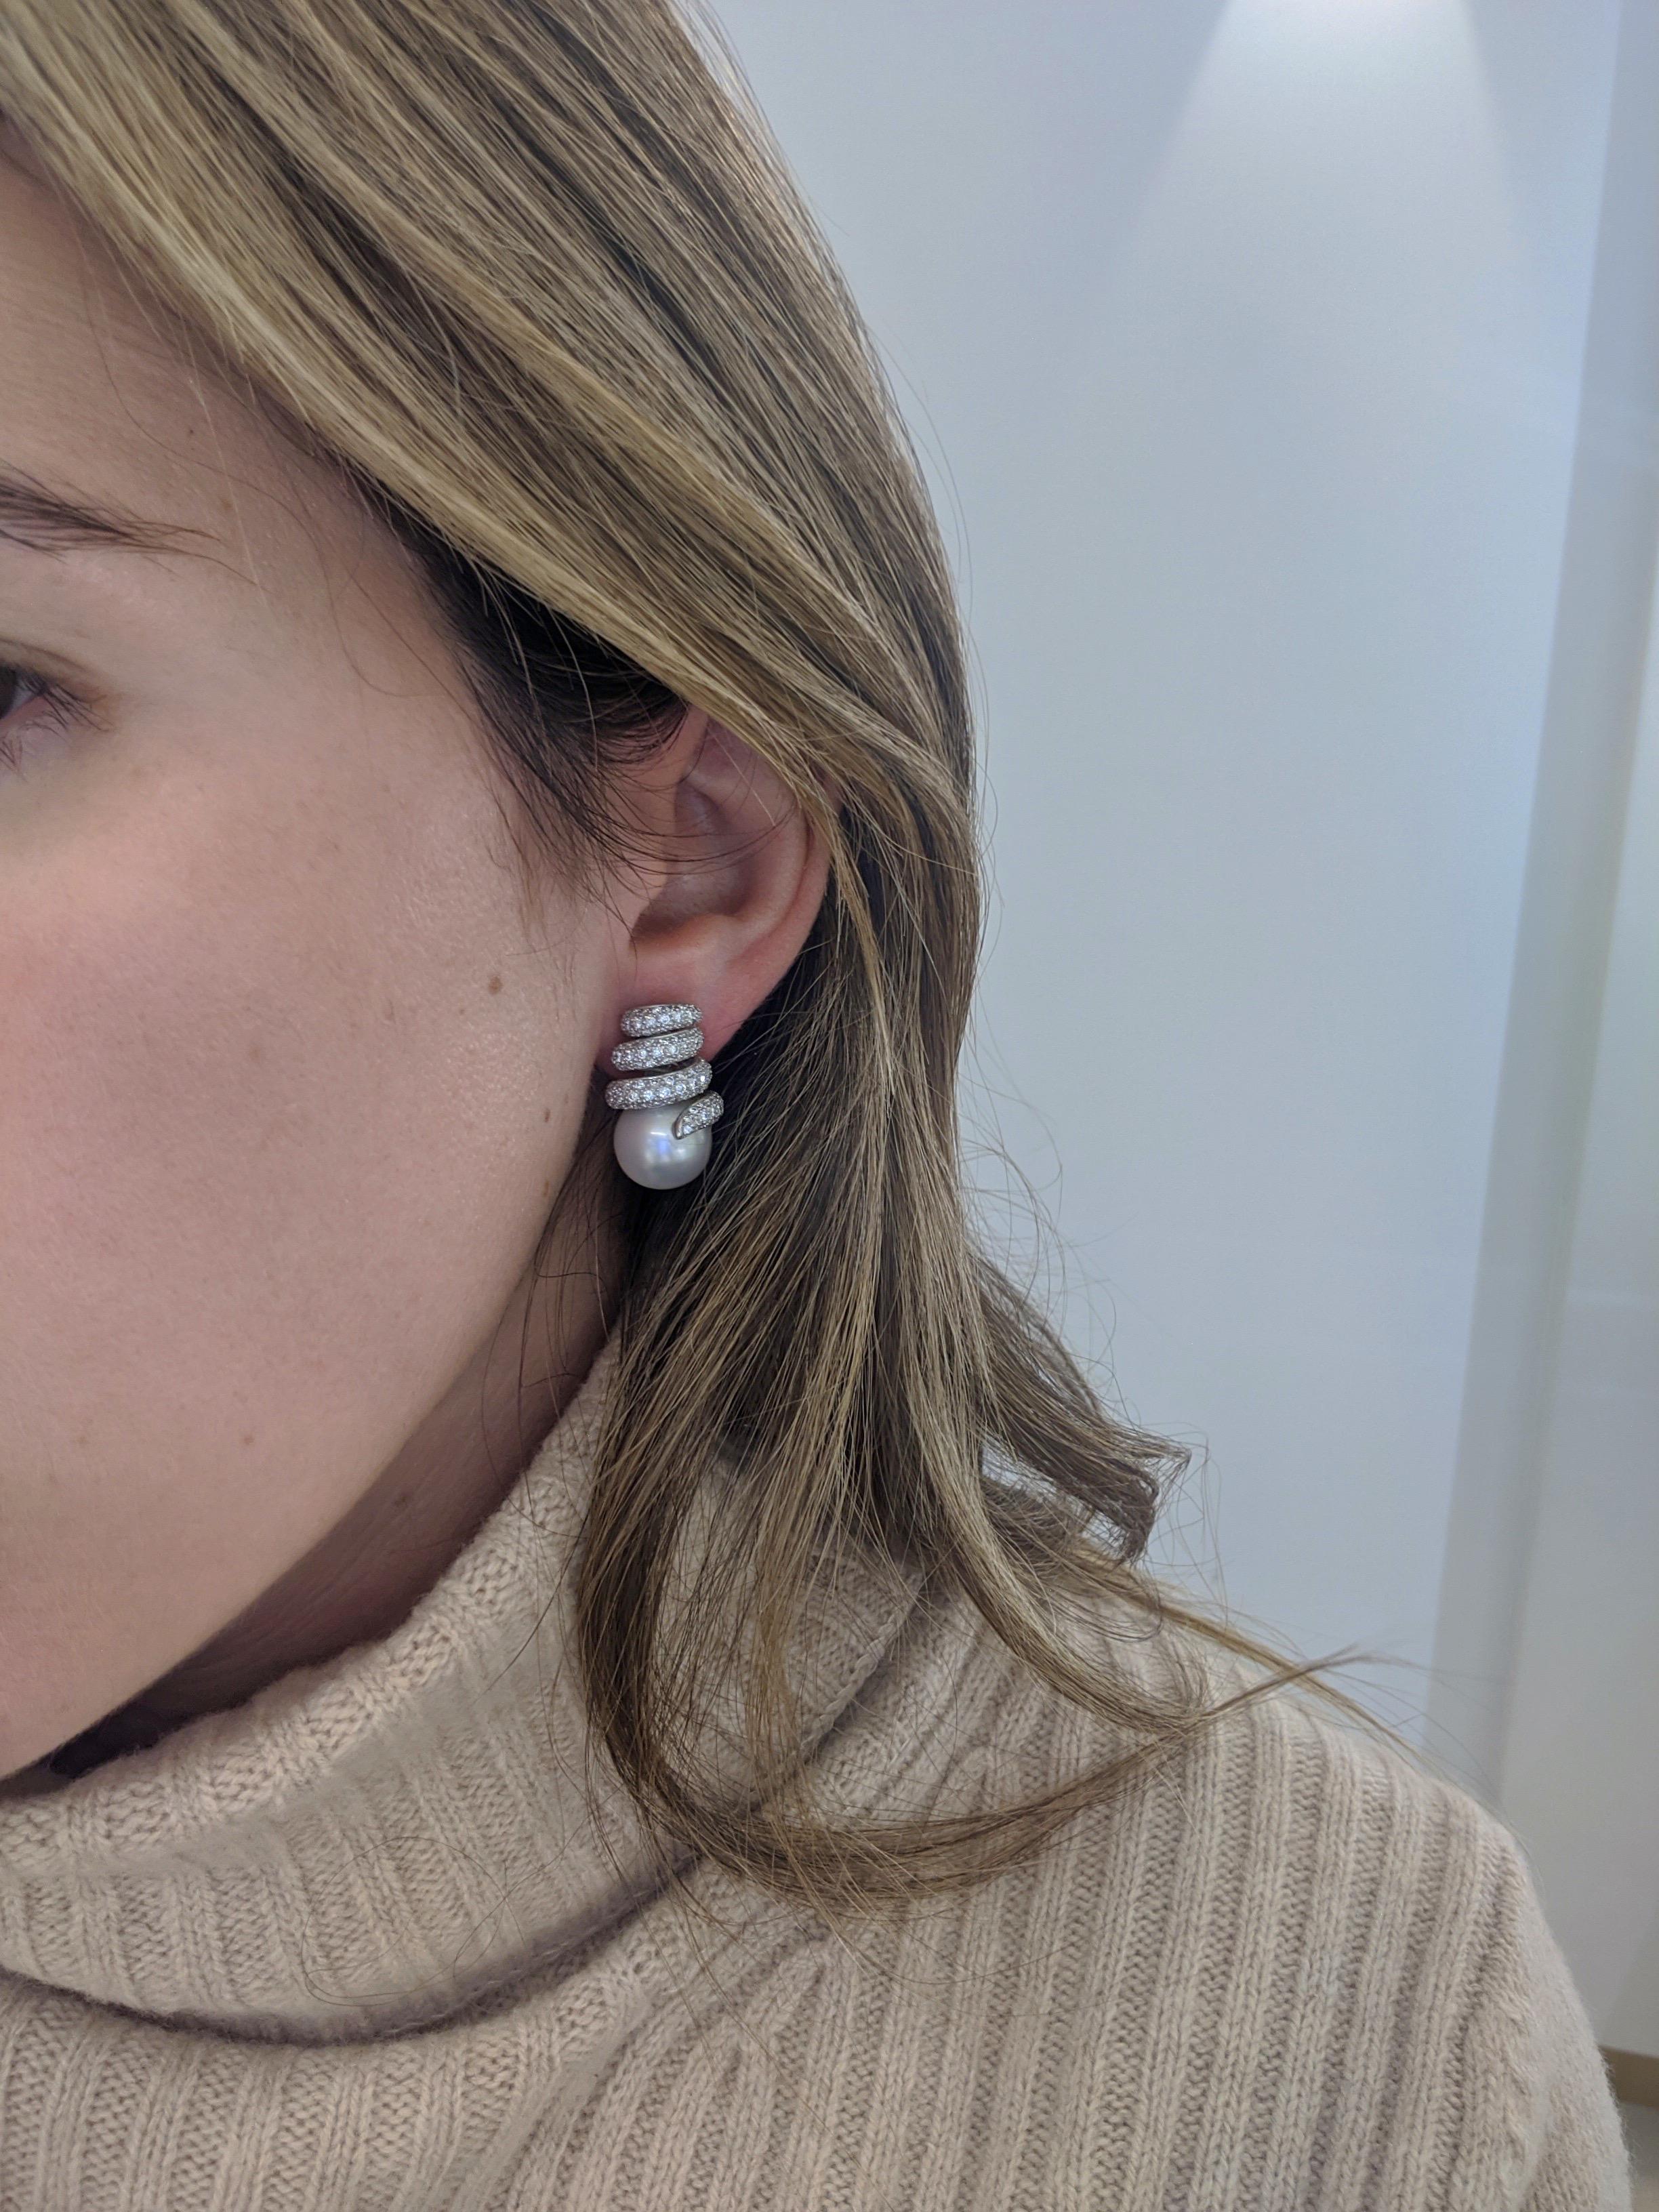 cellini pearl earrings